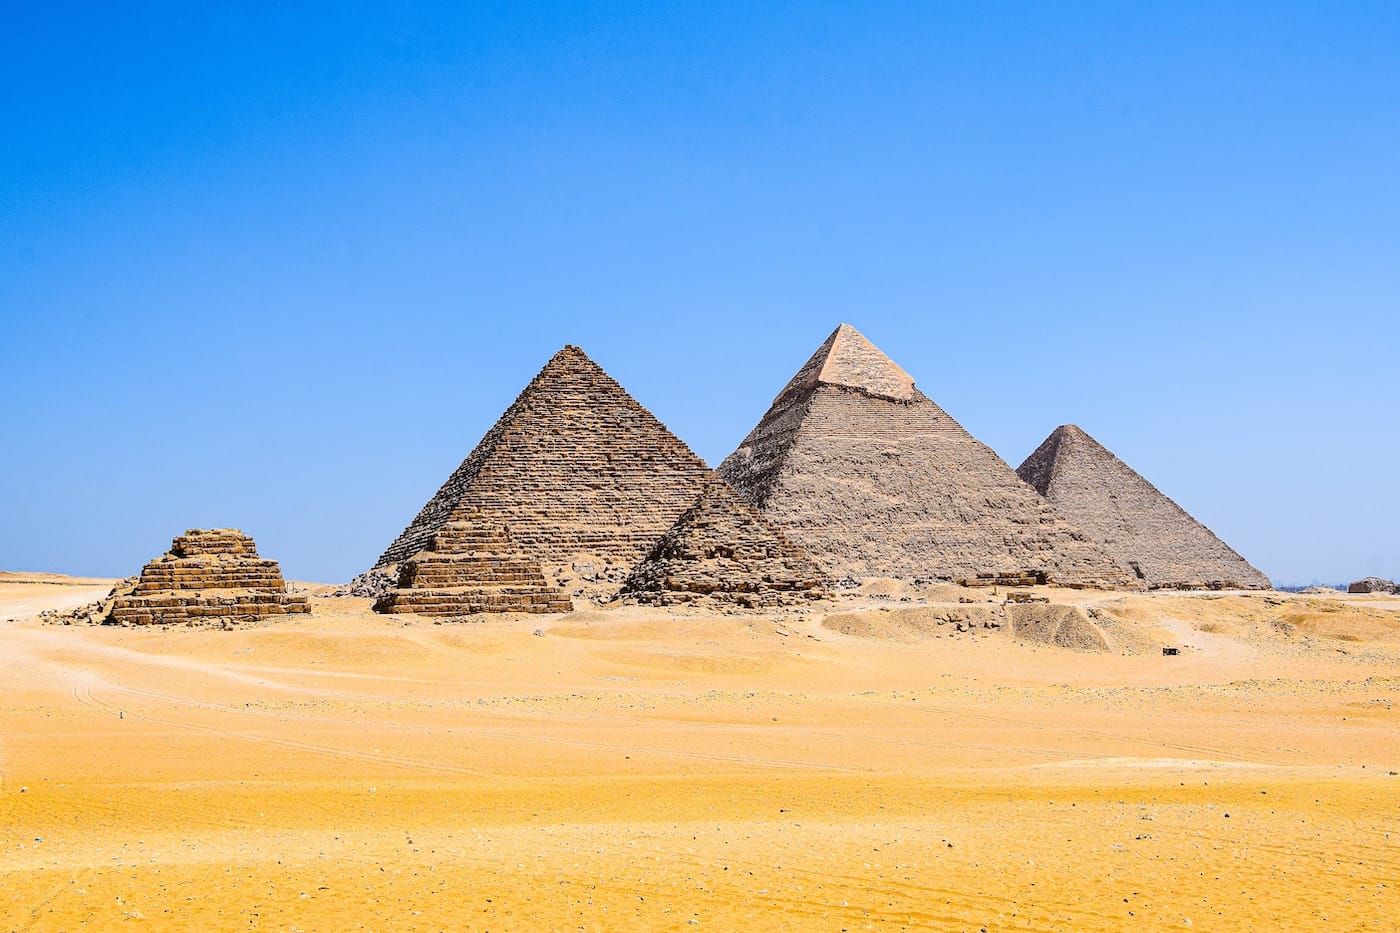 De piramides van Gizeh - Een van de 7 wereldwonderen in Egypte